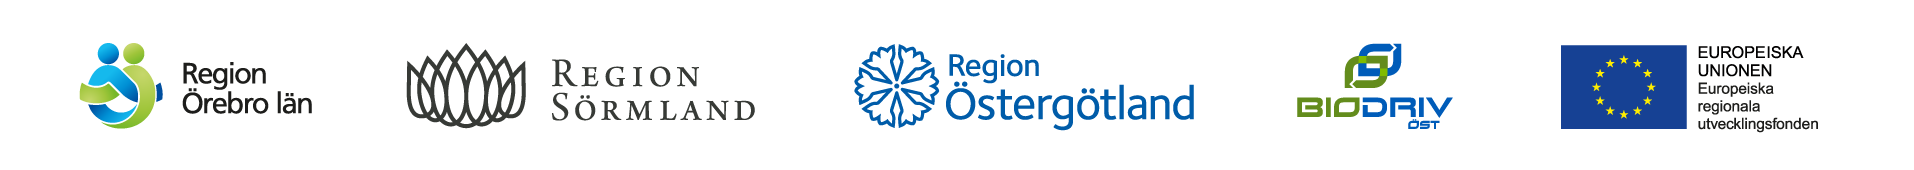 Logotyper för Region Örebro län, Region Östergötland, Region Sörmland, Biodriv Öst och EU/Tillväxtverket